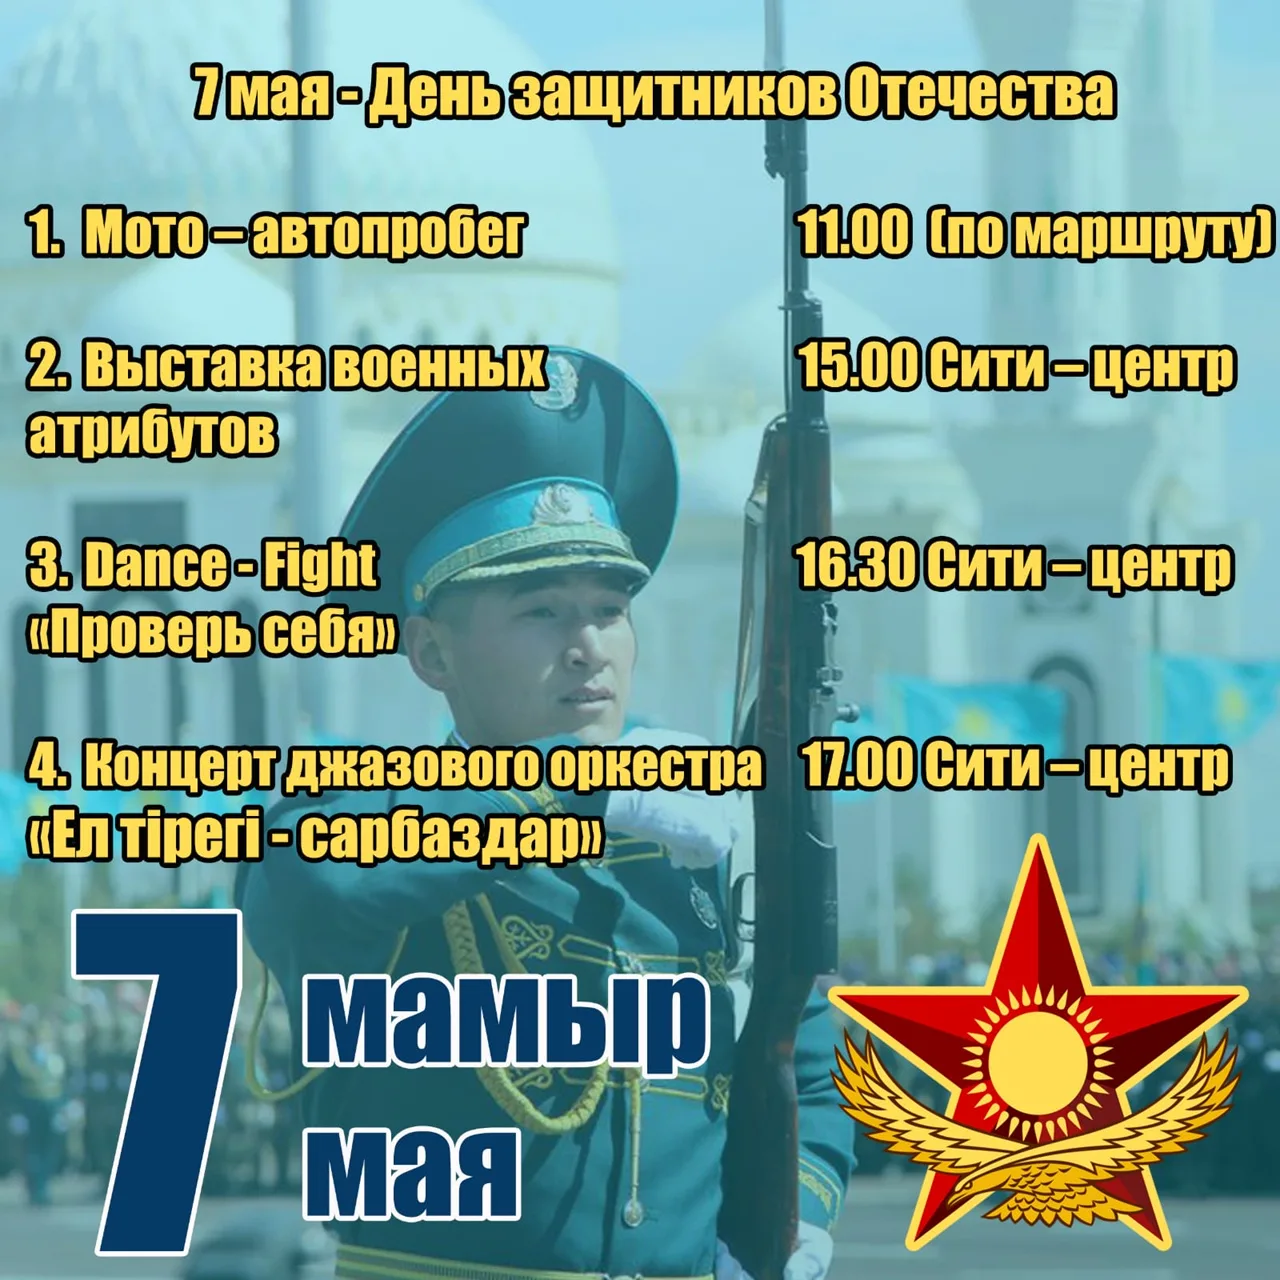 7 мая день защитника отечества. День защитника Отечества Казахстан. 7 Мая день защитника Отечества в Казахстане. Денъзащитника Отечества в Казахстане.